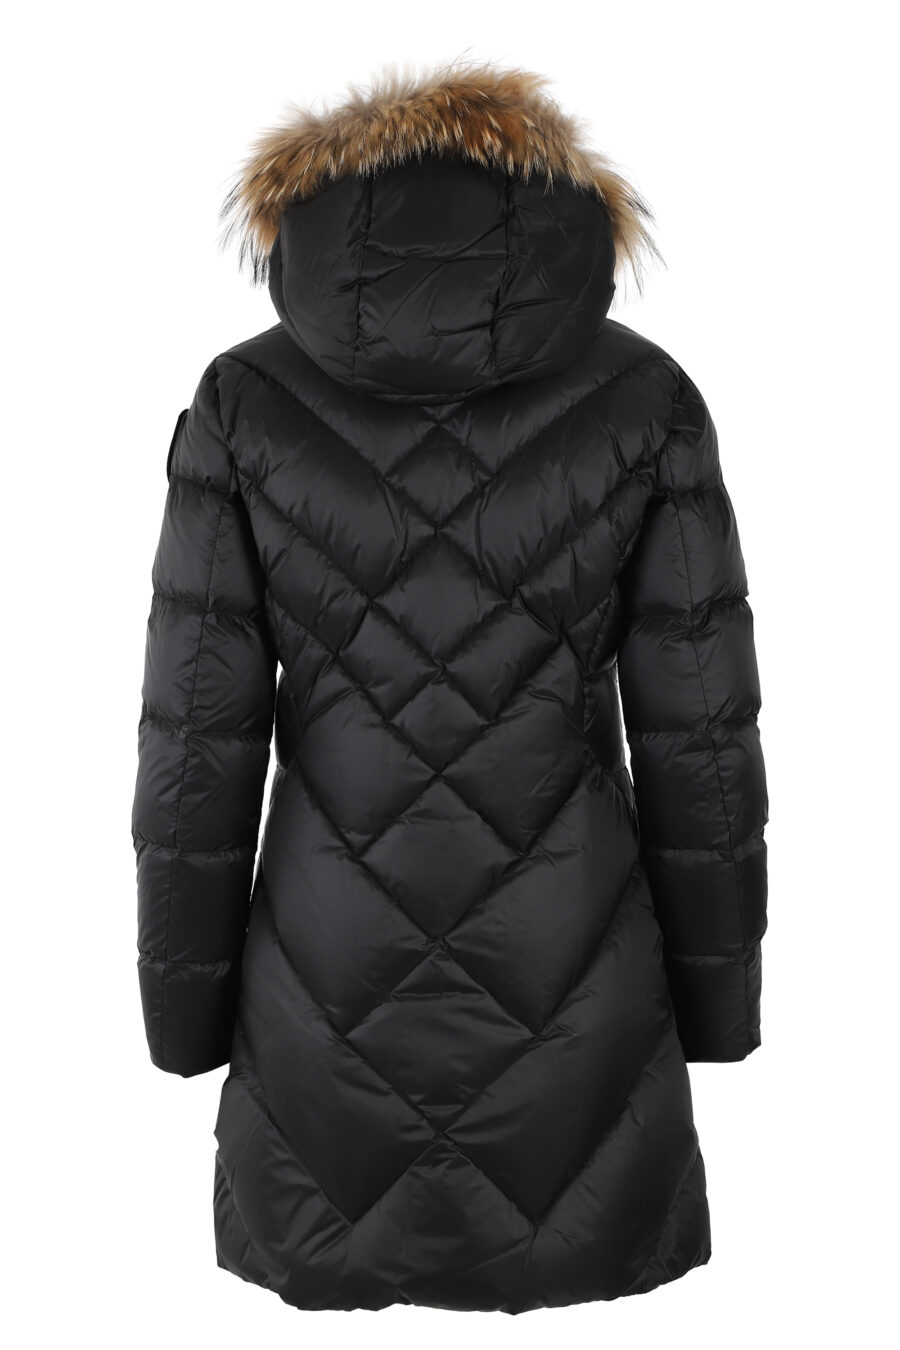 Longue veste noire avec capuche en fourrure et doublure marron - IMG 4991